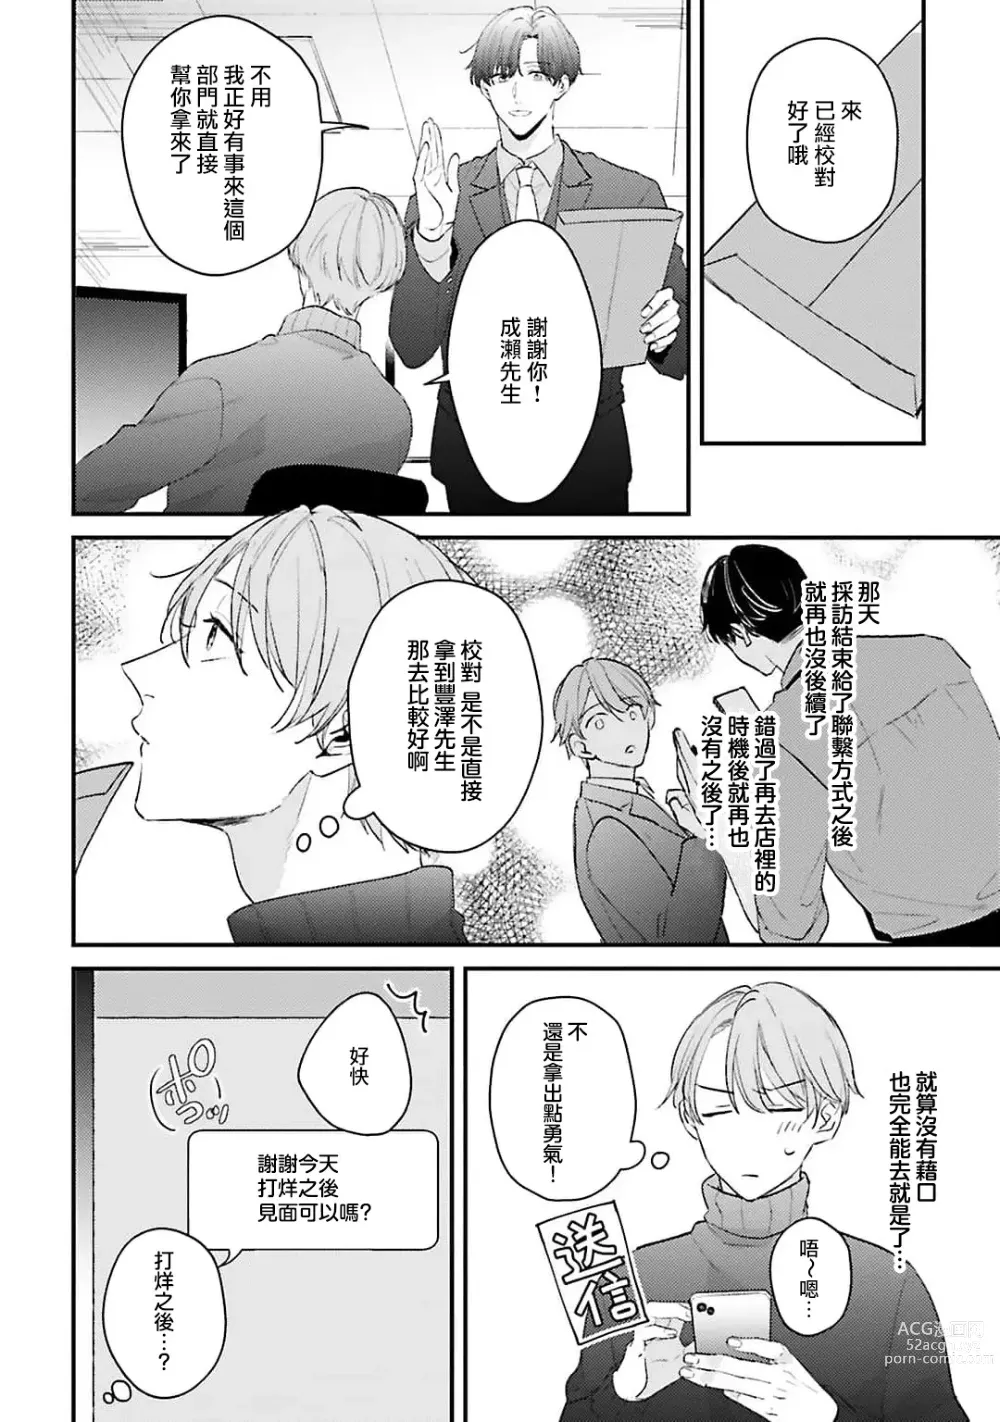 Page 17 of manga 绽放的恋爱皆为醉与甜1